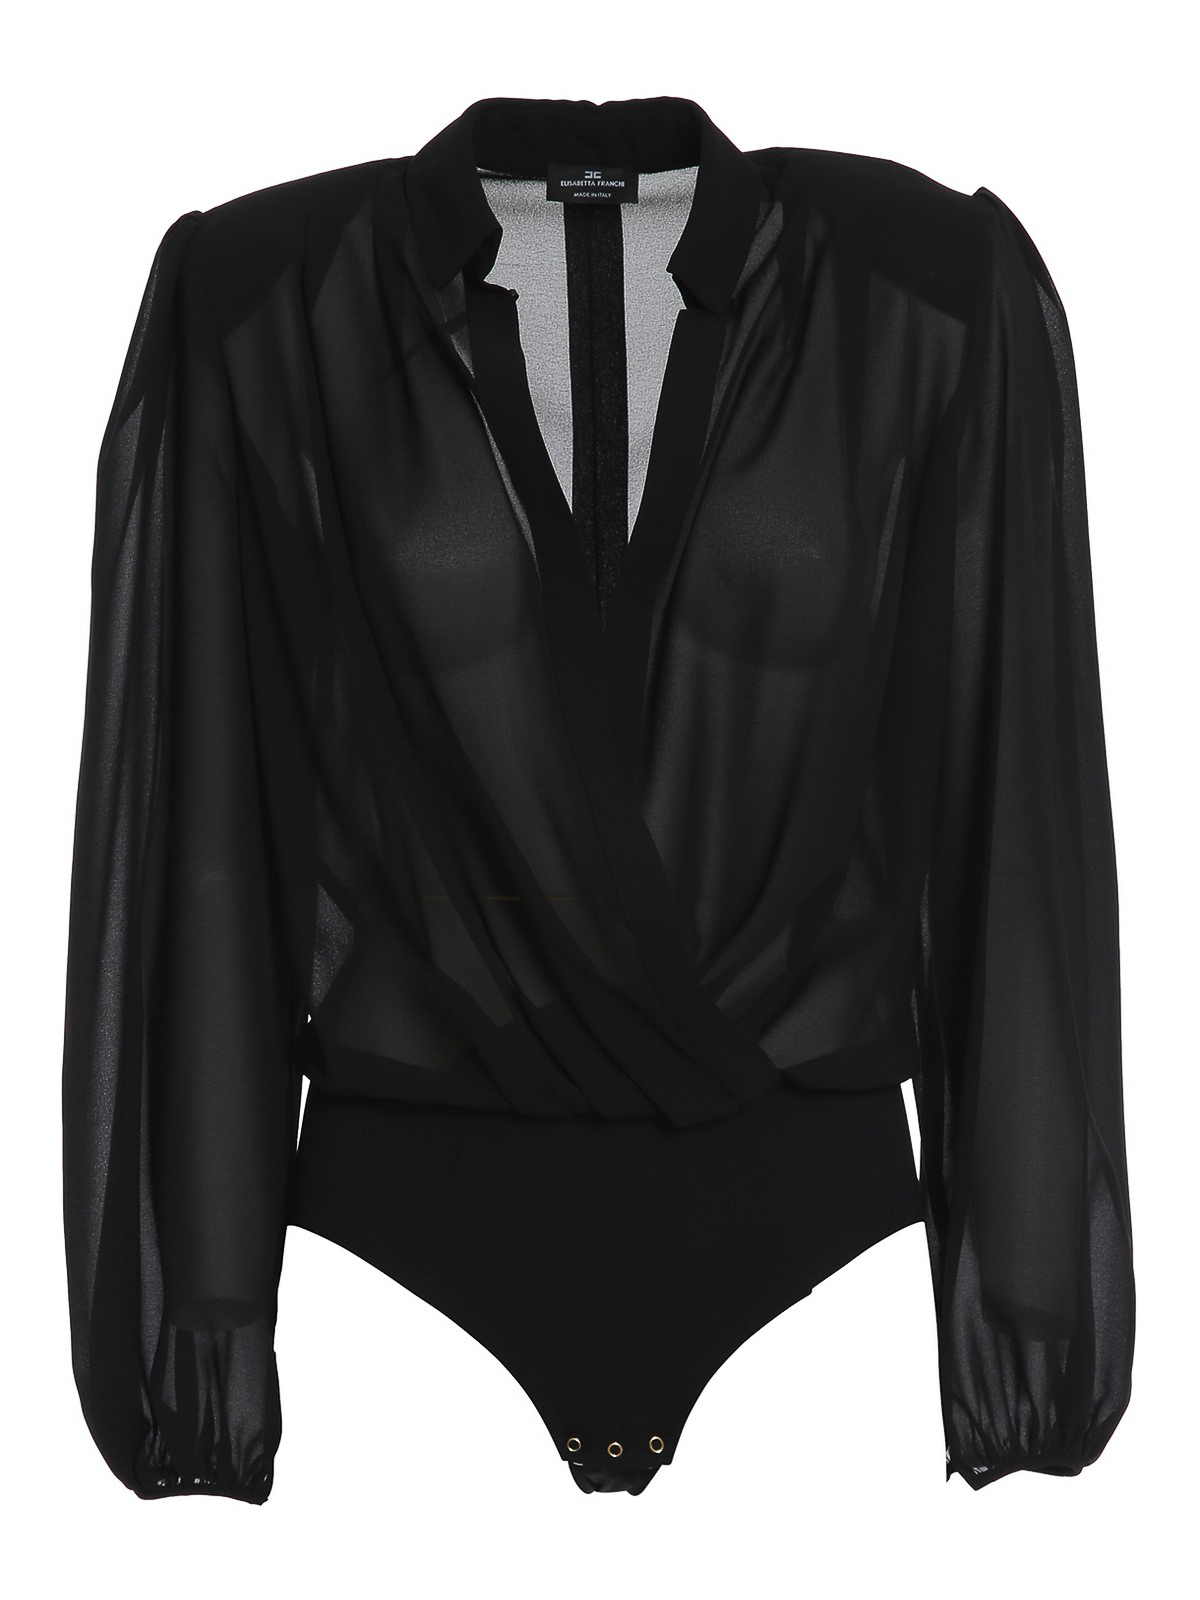 Blouses Elisabetta Franchi - Georgette blouse style bodysuit